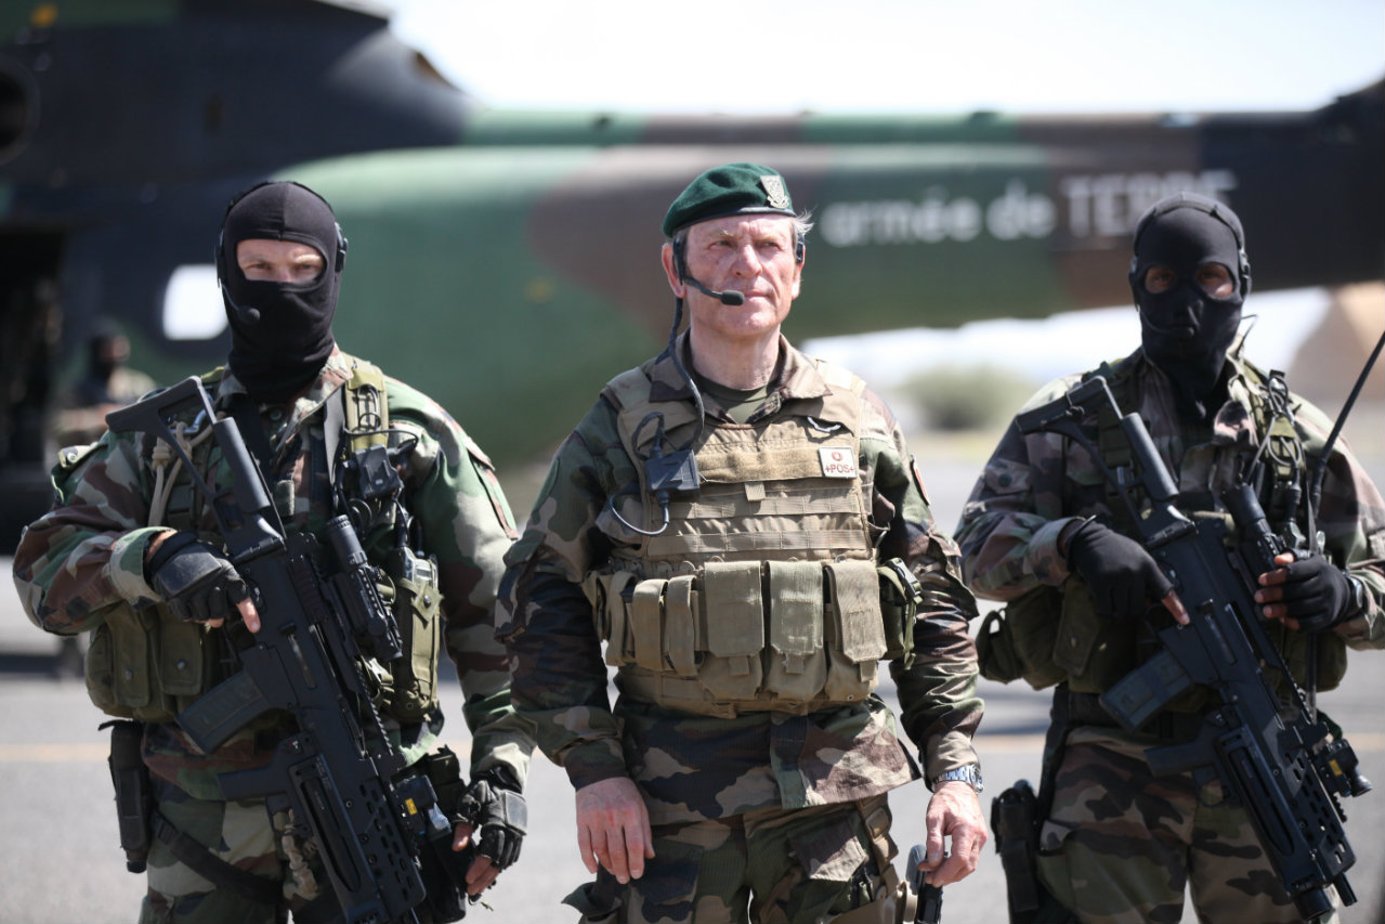 Отряд проявить. Отряд особого назначения боевик, драма, военный Франция, 2011 год.